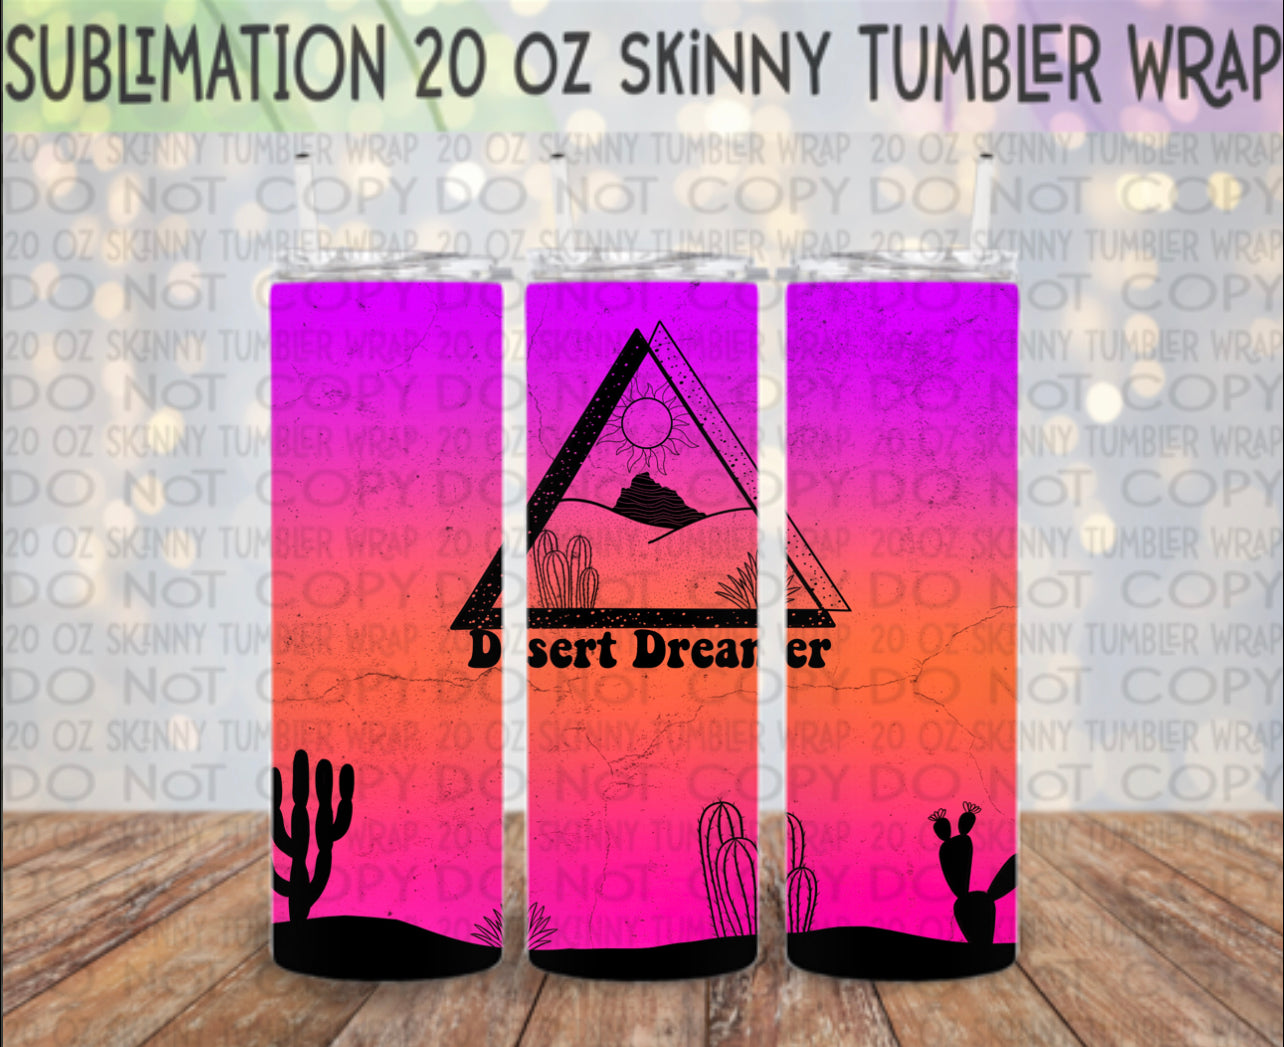 Desert Dreamer 20 Oz Skinny Tumbler Wrap - Sublimation Transfer - RTS